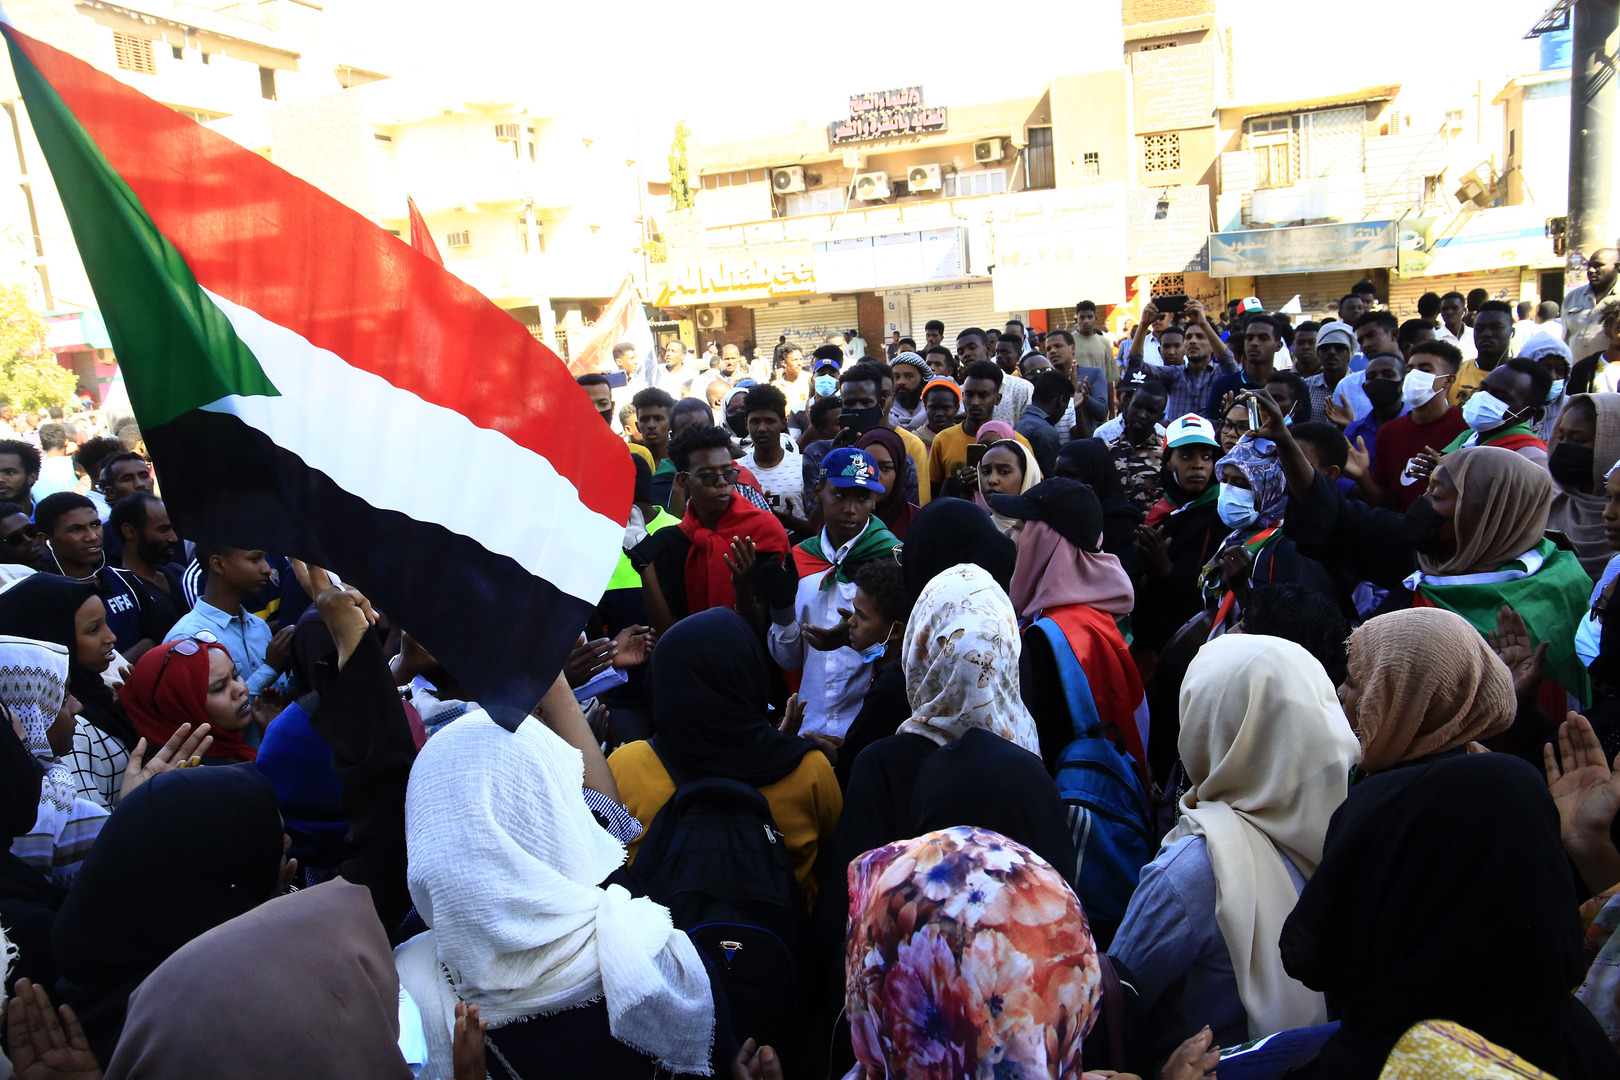 تسعة أعضاء في مجلس الأمن يطالبون بأقصى درجات ضبط النفس في السودان